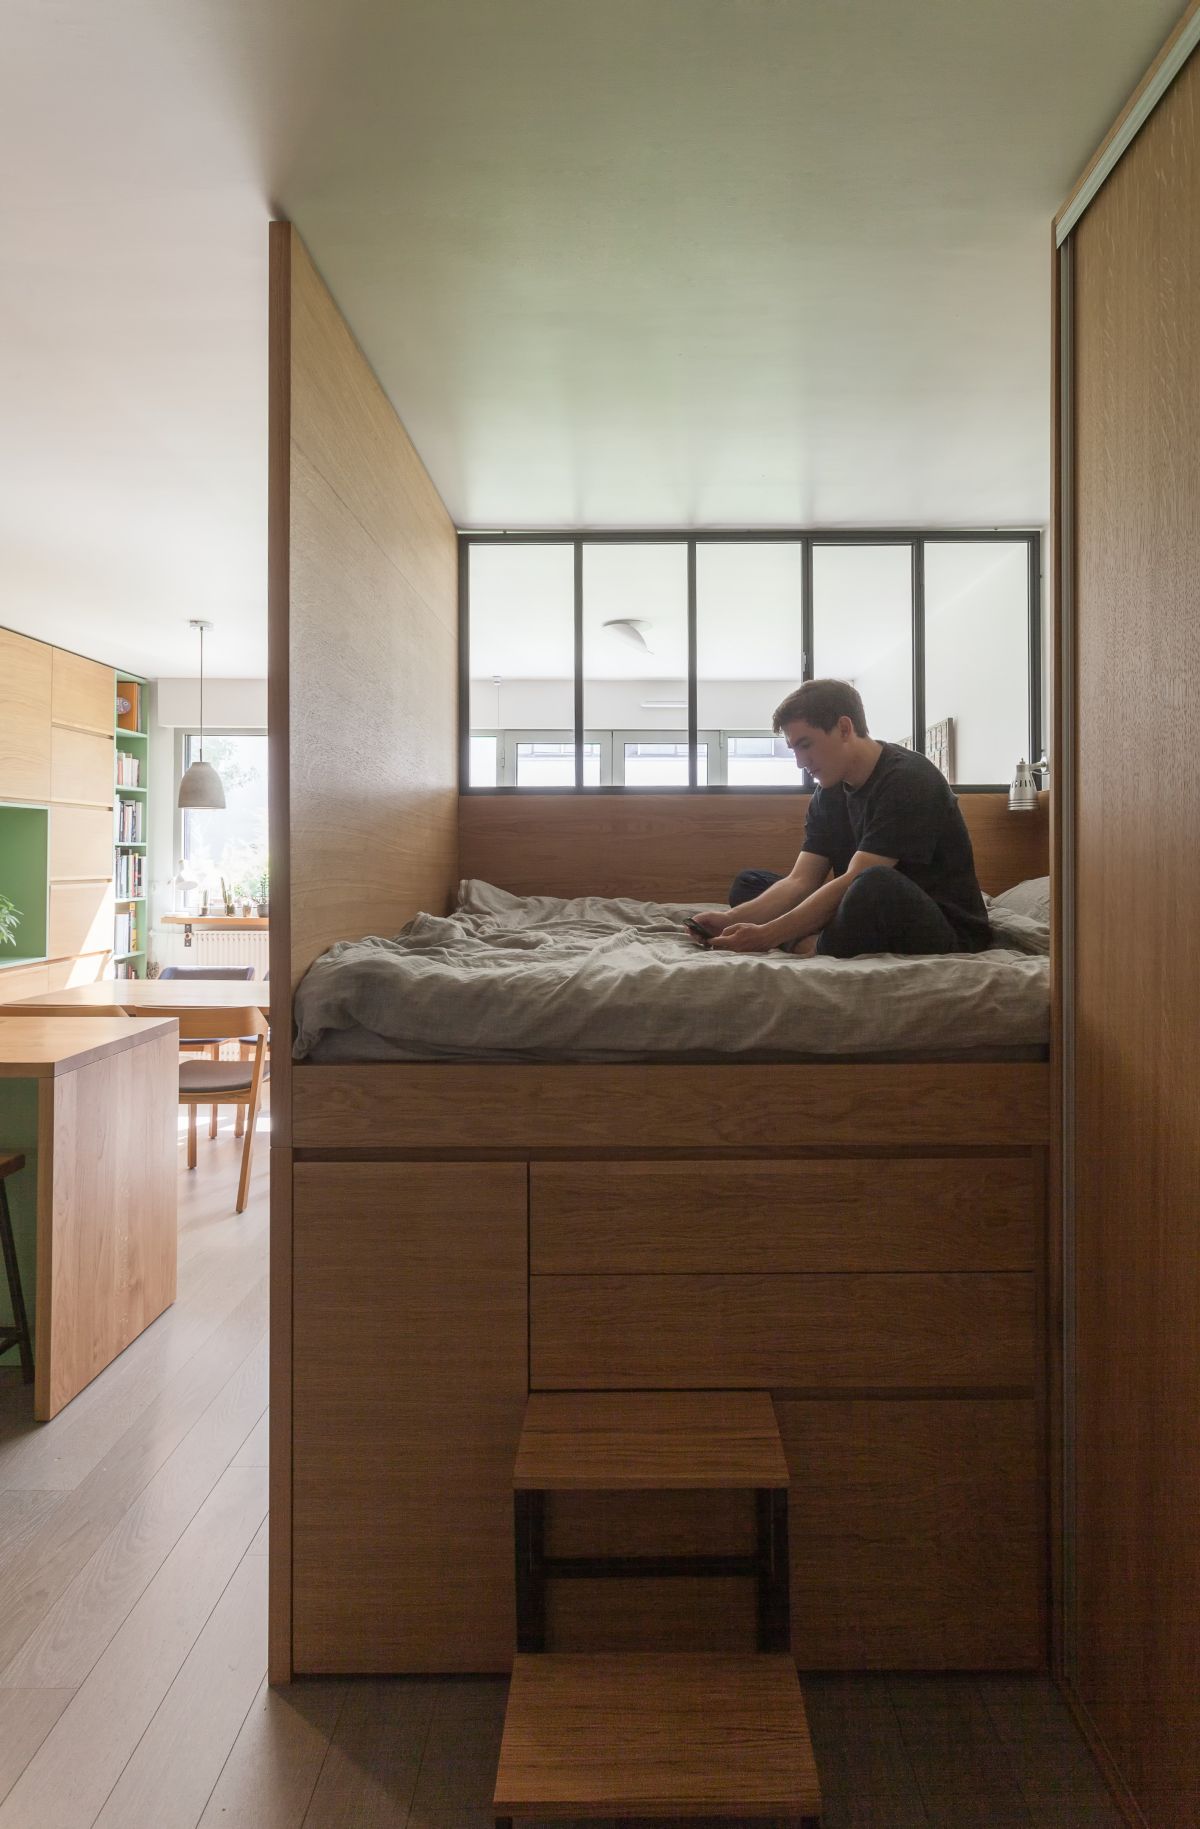 Bên trên khu kệ tủ lưu trữ đồ là giường ngủ được thiết kế thông minh, "đo ni đóng giầy" cho căn hộ